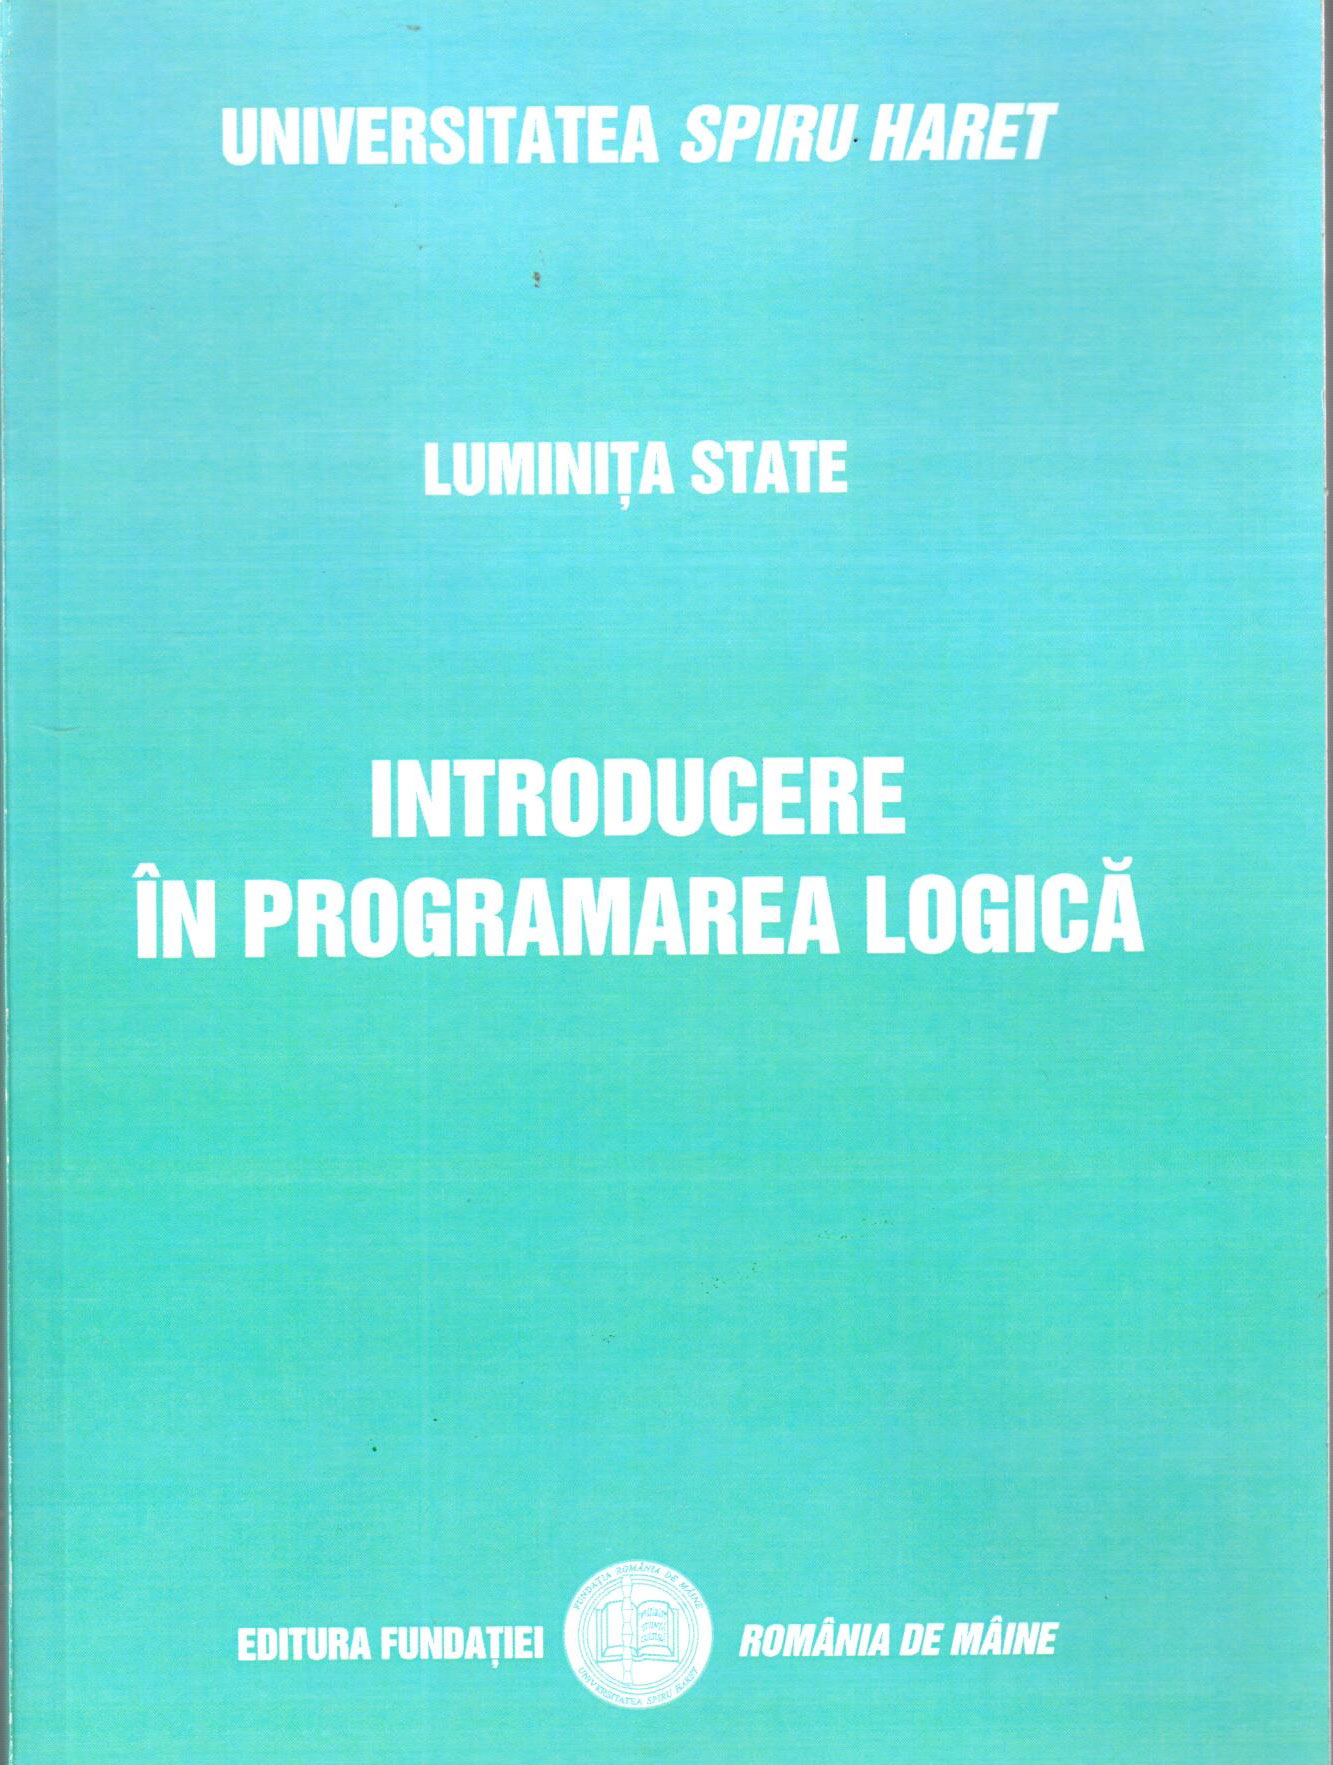 Introducere in Programarea Logica | Luminita State de la carturesti imagine 2021